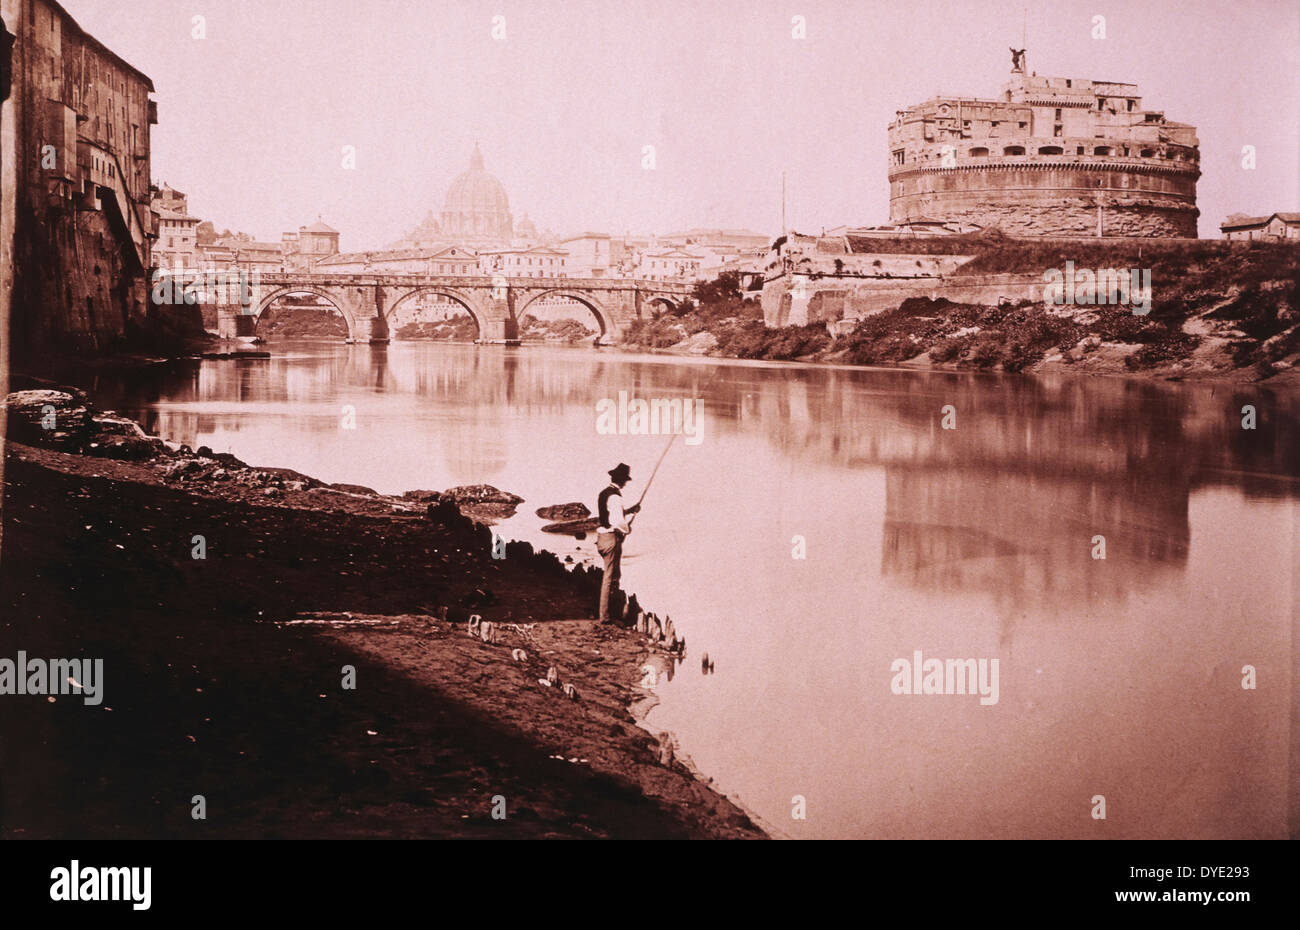 Man Fishing Near Castel Sant'Angelo and Bridge, Rome, Italy, circa 1880 Stock Photo